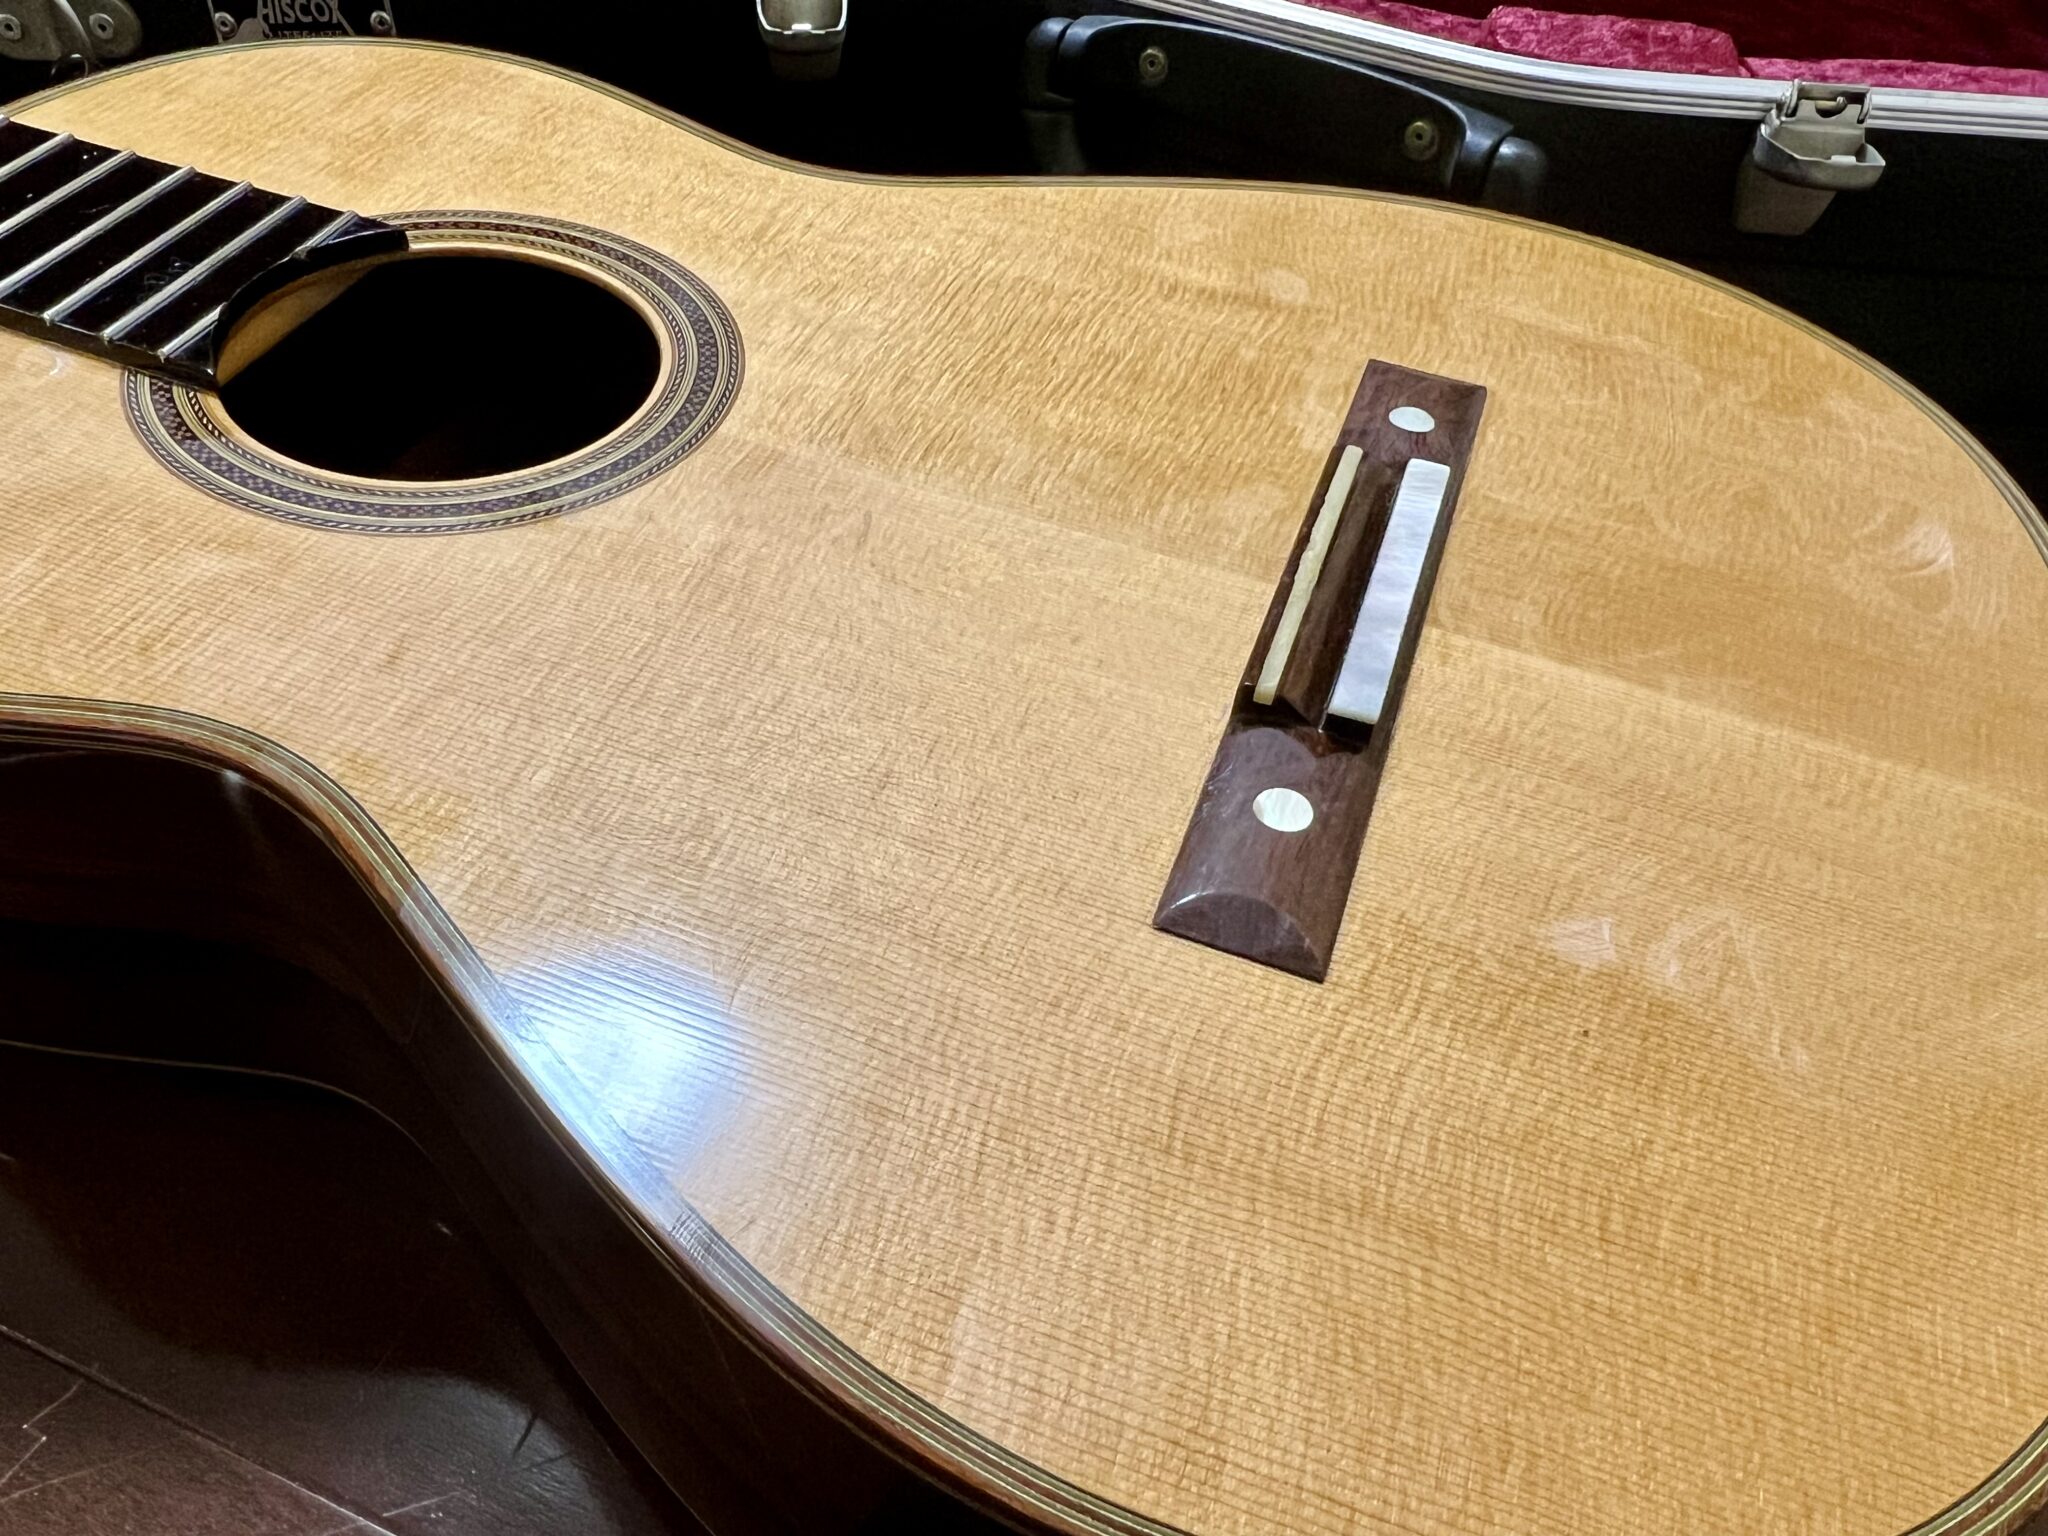 PW-PL-01を使用したギターの表面板